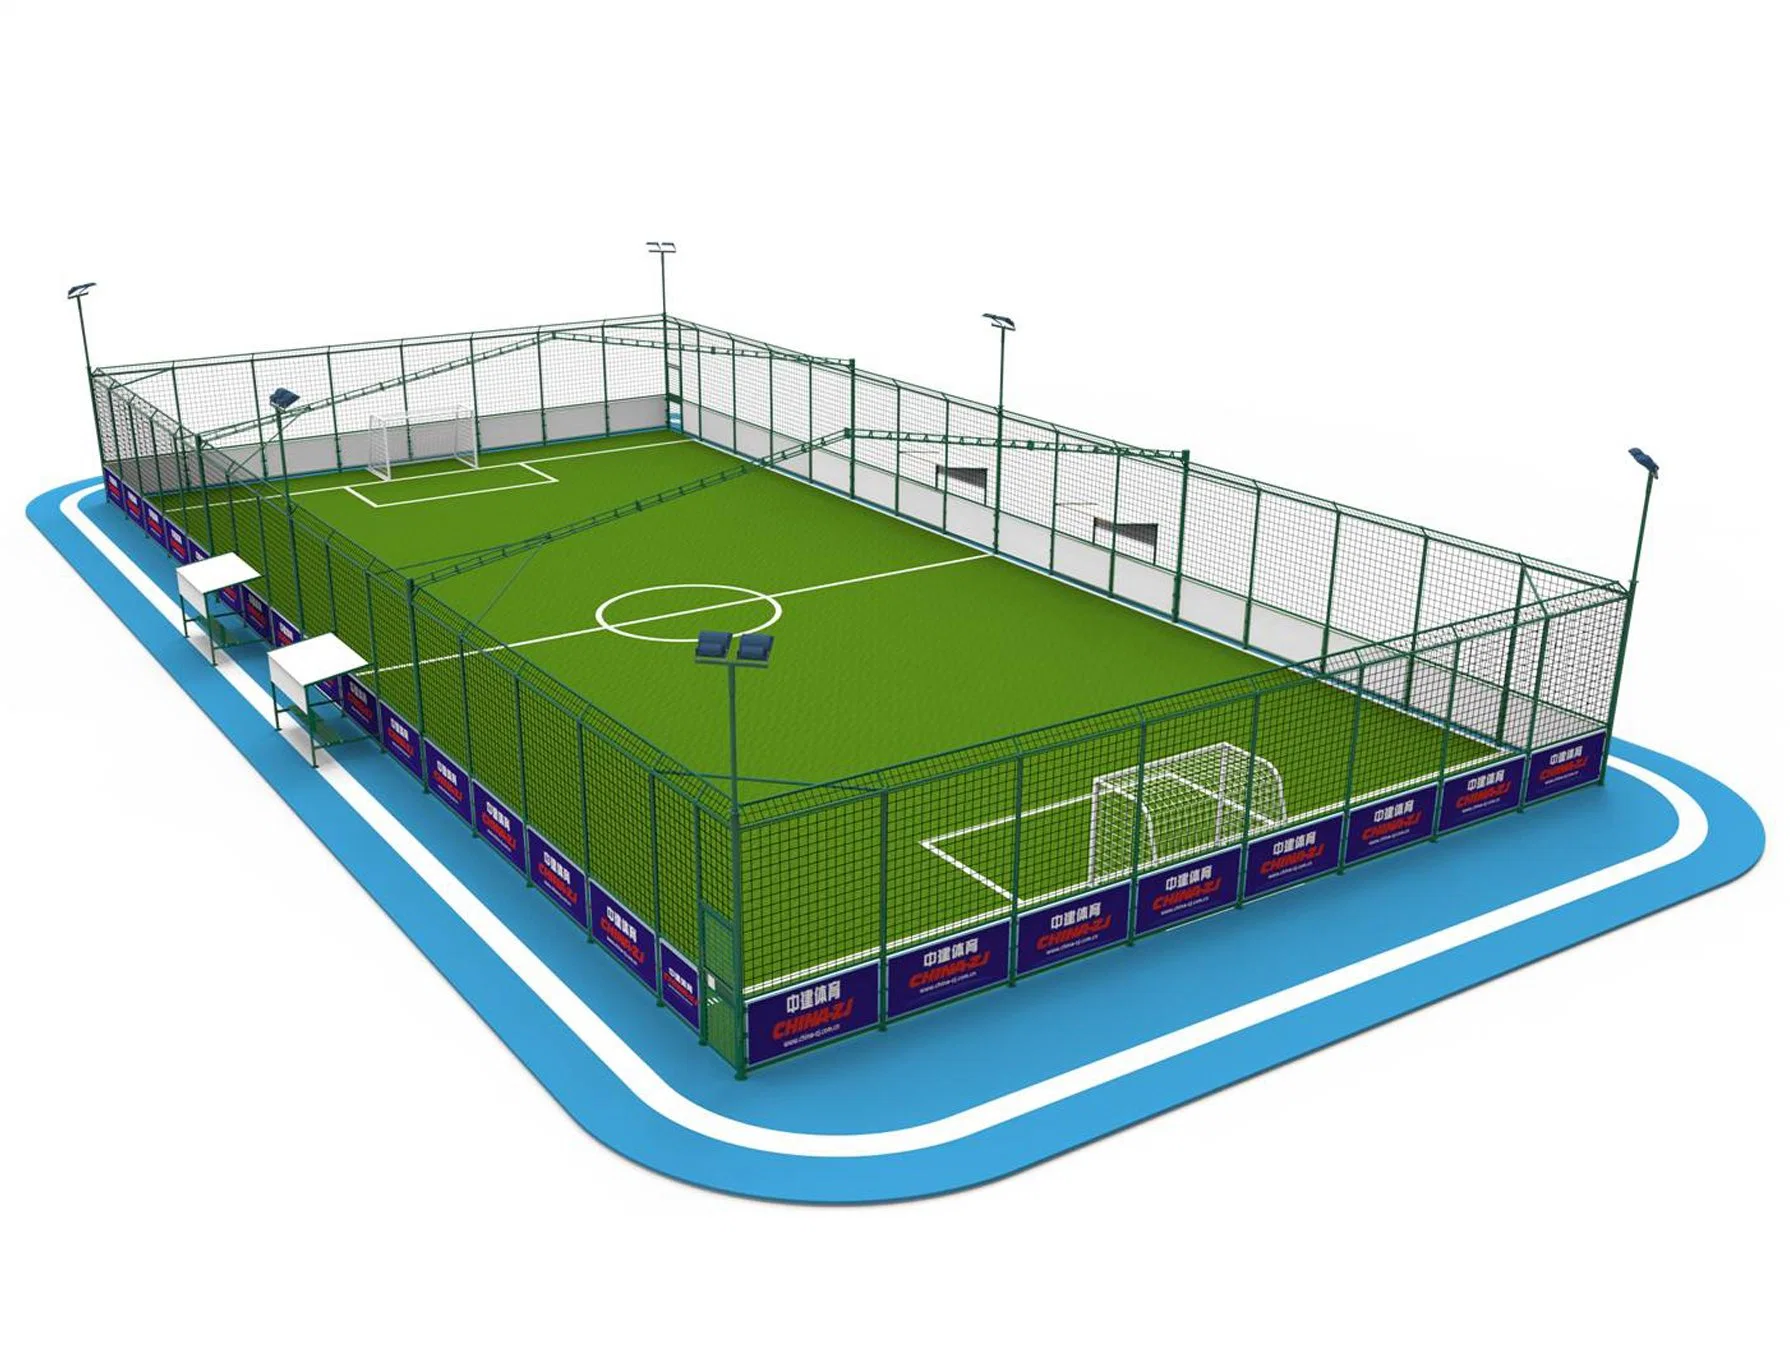 Amigo do ambiente de qualidade superior com densidade elevada Cage-Football Soccer Grass relva artificial relva sintética Paisagem Lawn Decoração